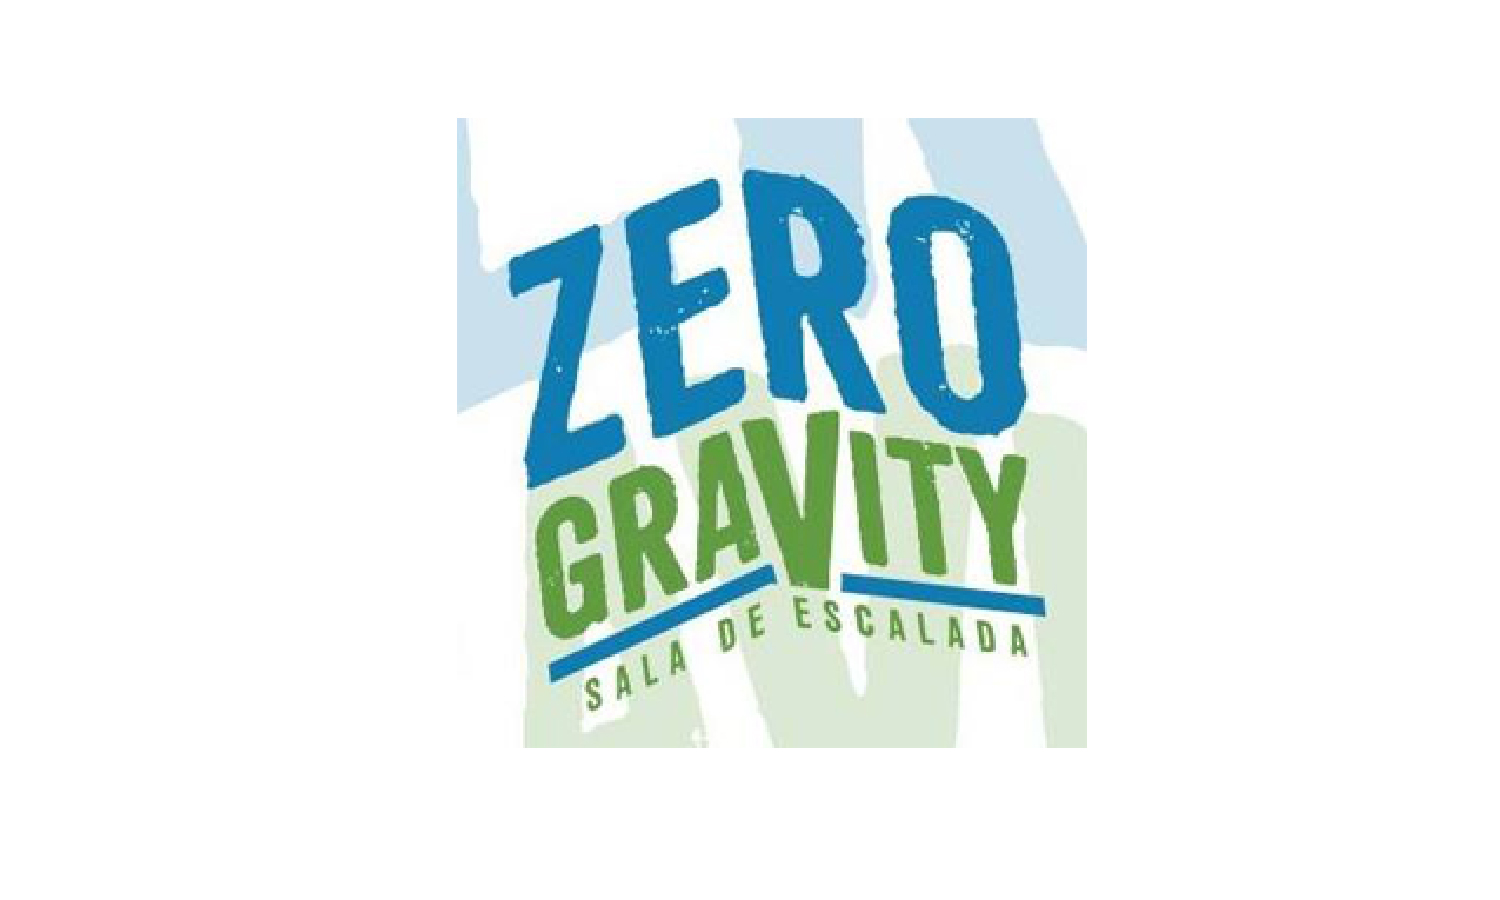 zero gravity